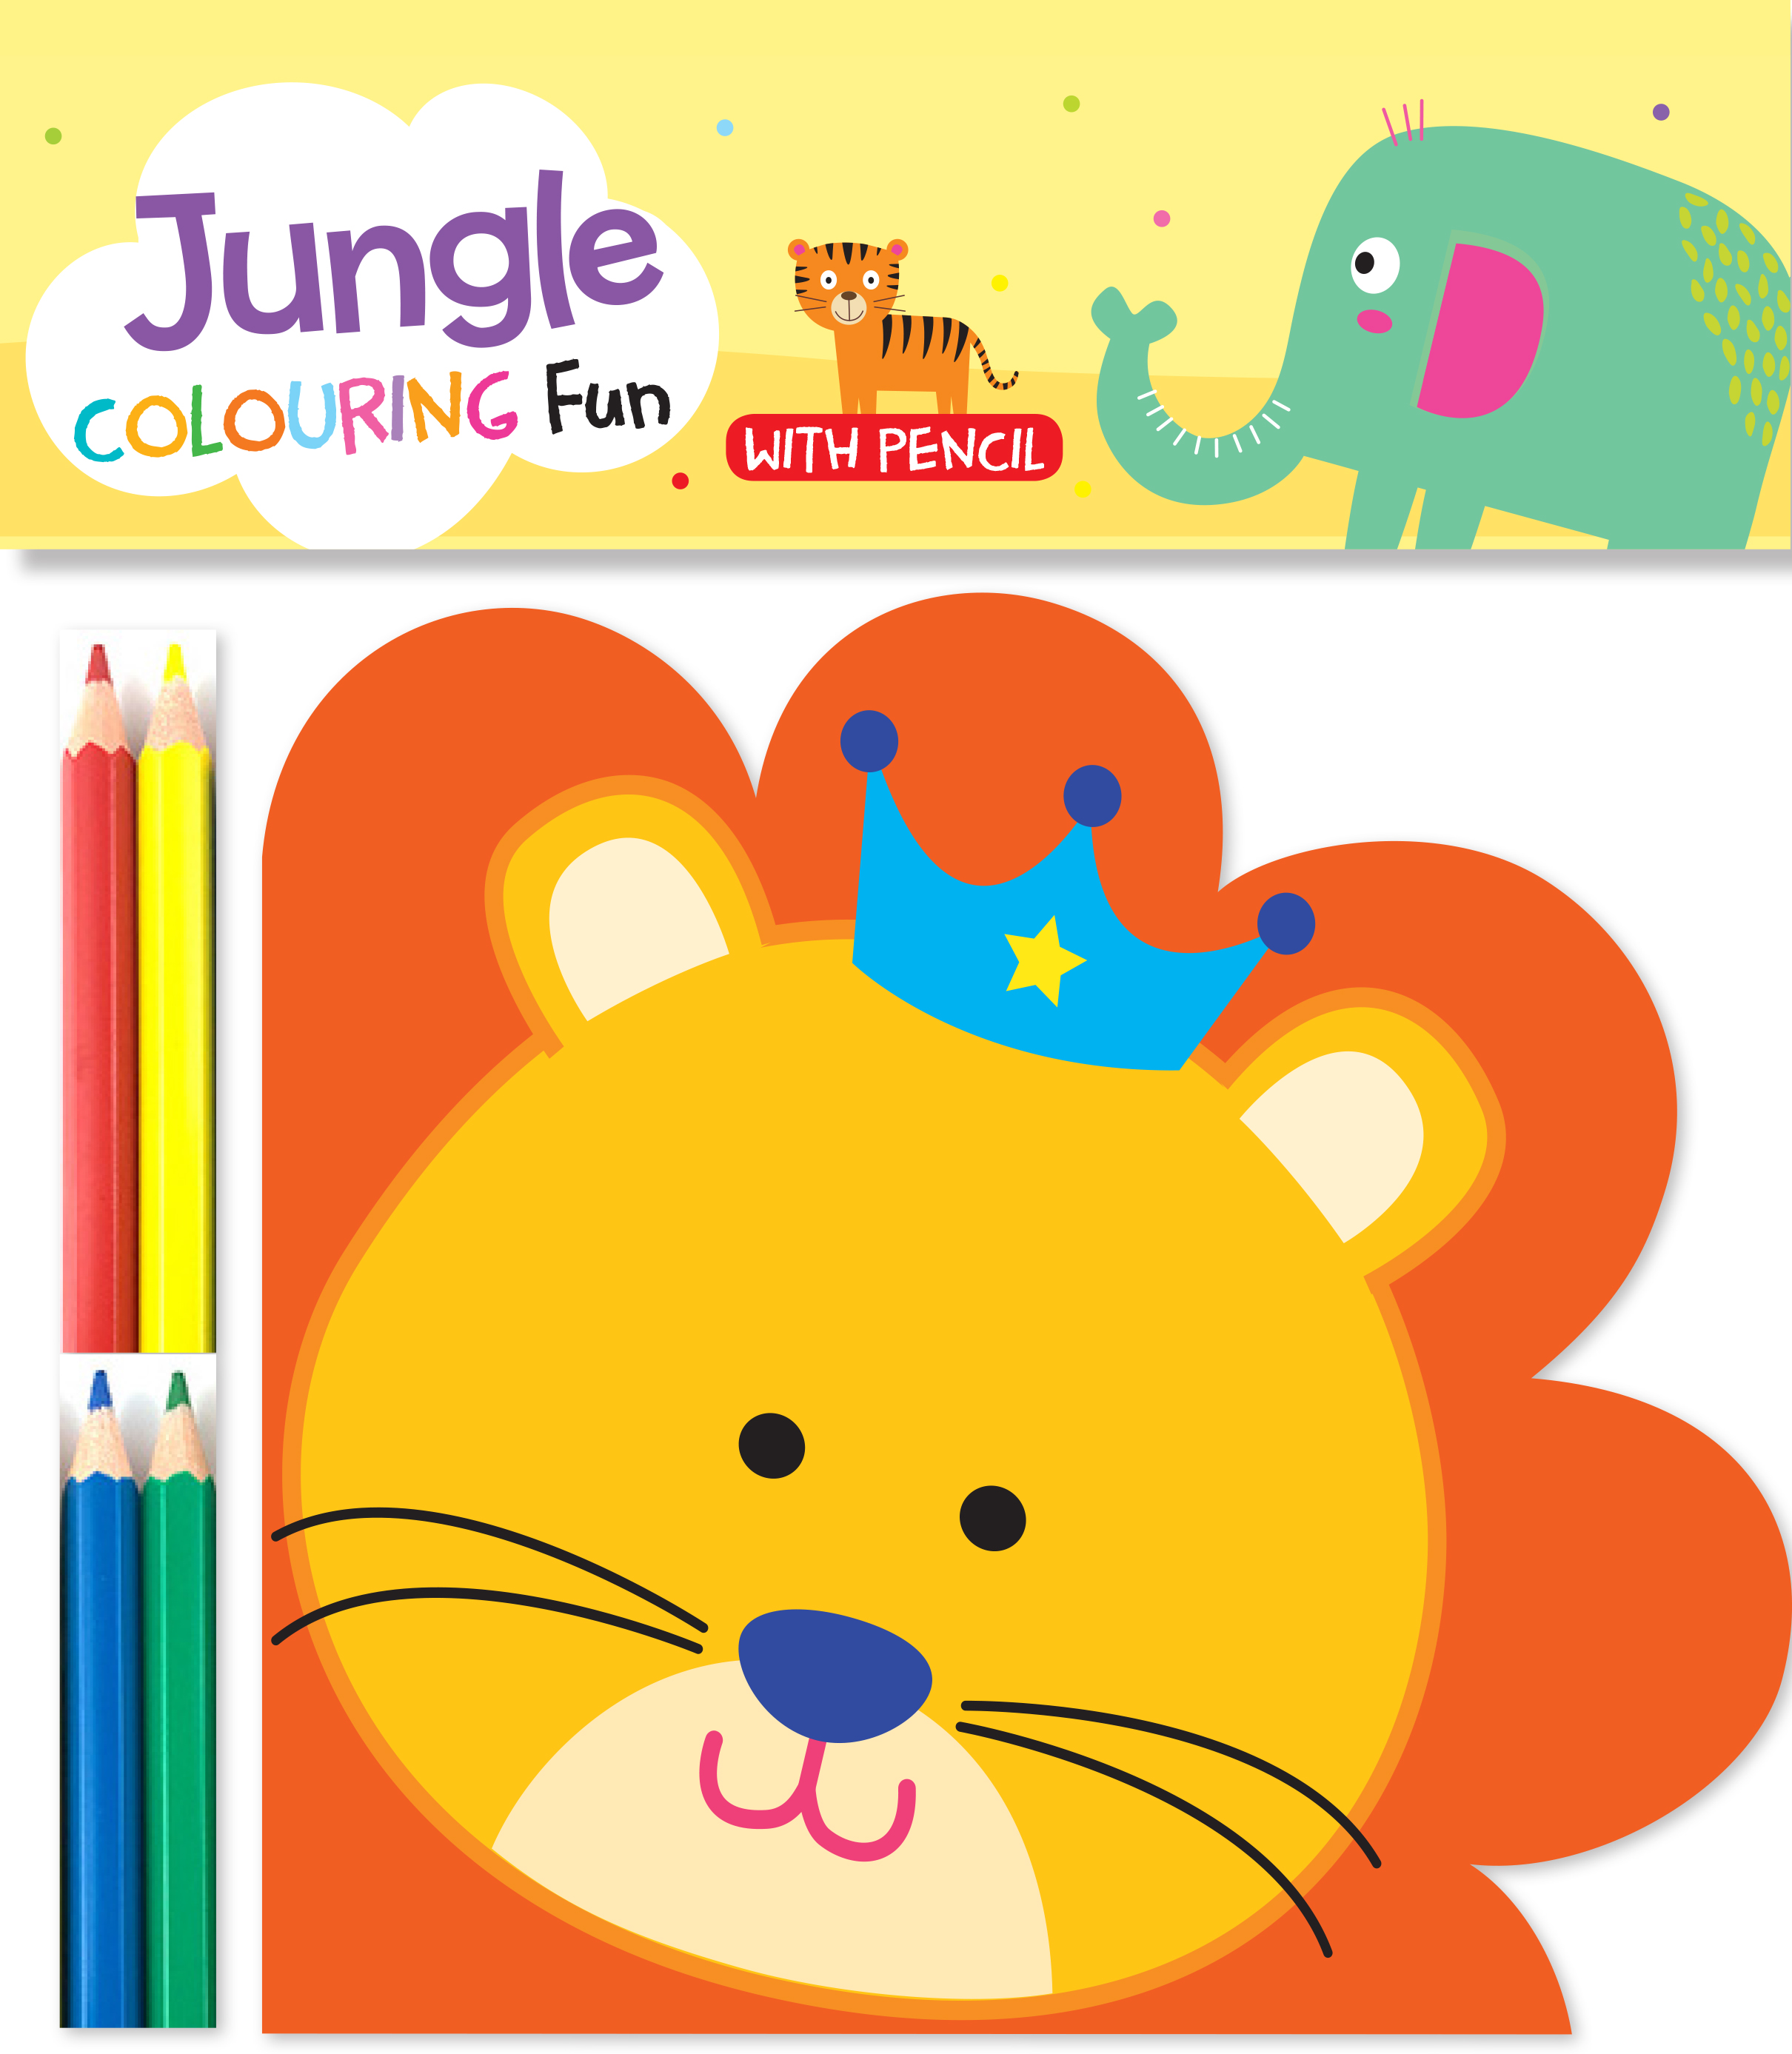 Jungle Colouring Fun with Pencil 